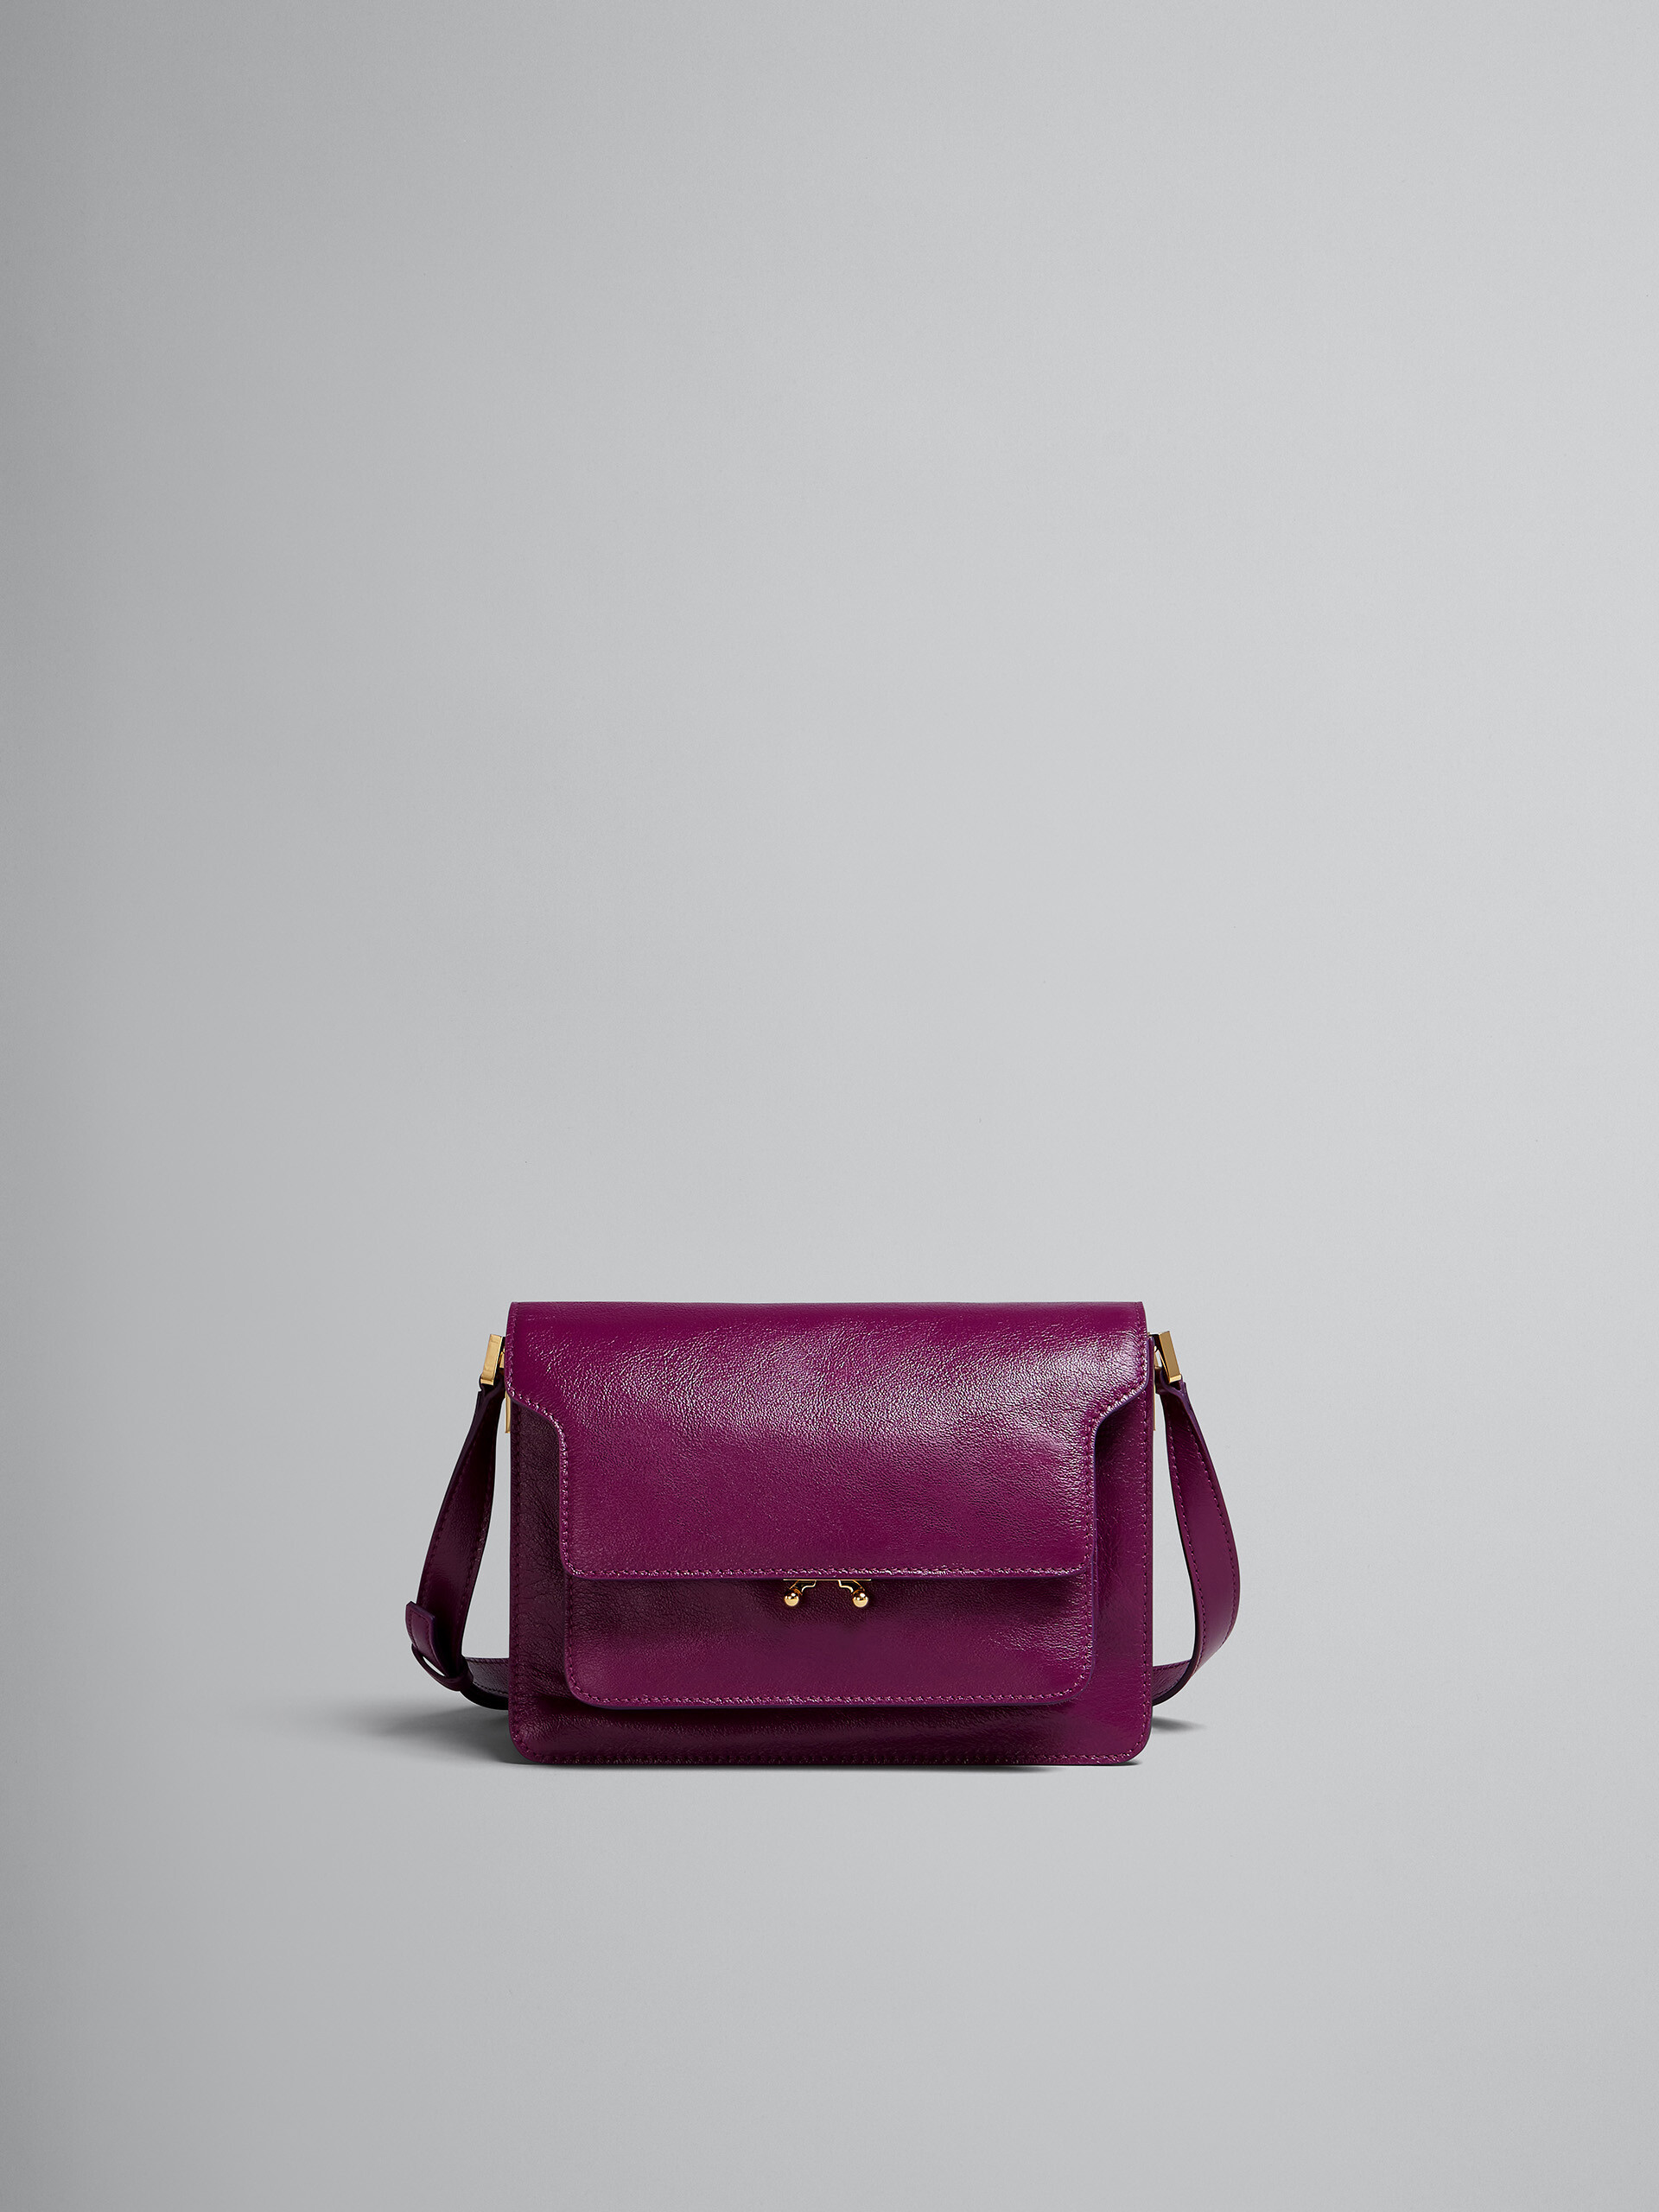 TRUNK SOFT medium bag in purple leather - Shoulder Bag - Image 1